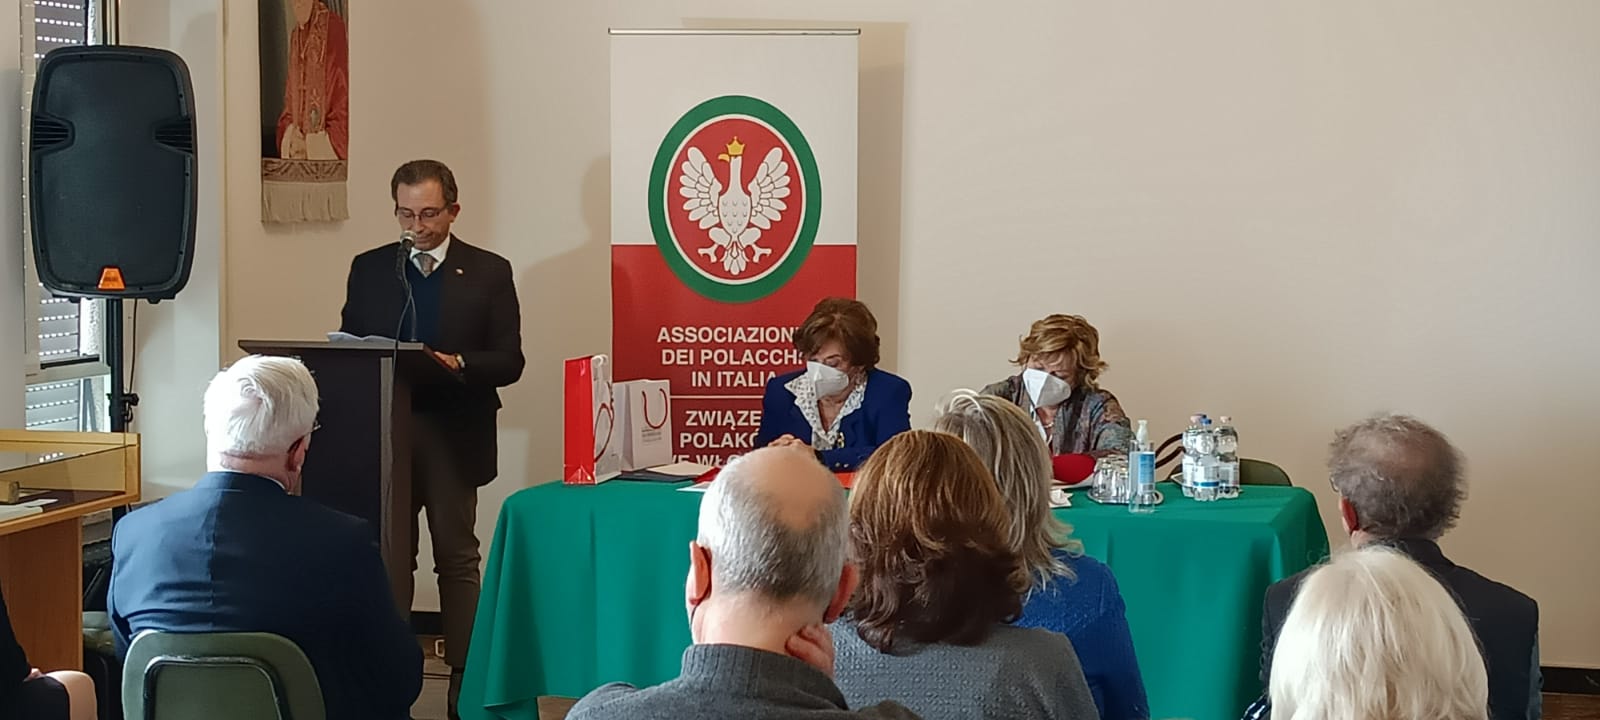 Roma: Intervento del Console Onorario della Repubblica di Polonia in Firenze Stefano Barlacchi durante il Convegno dell’Associazione Generale dei Polacchi in Italia